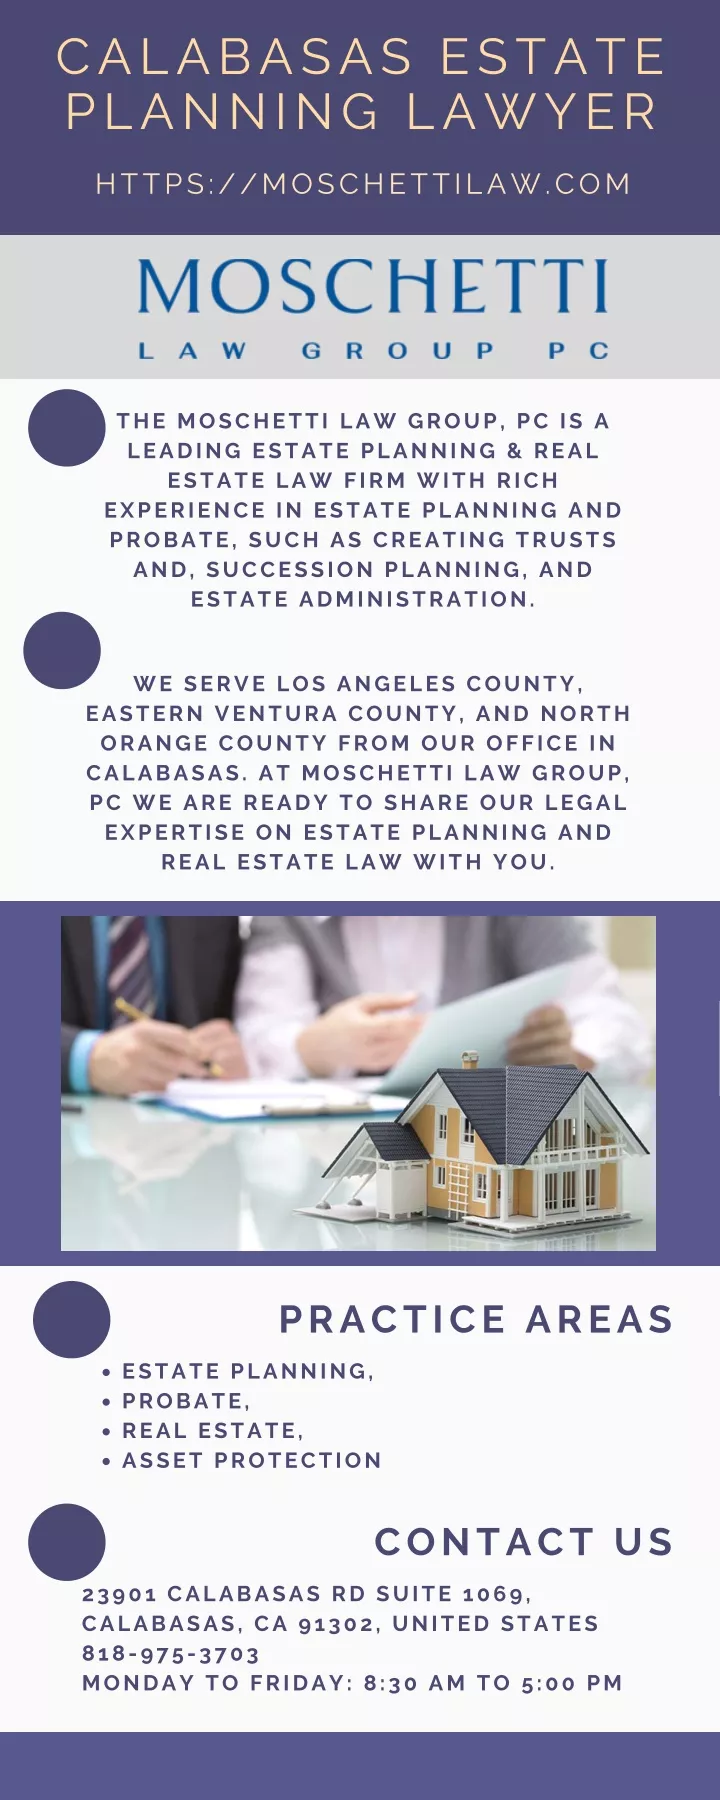 calabasas estate planning lawyer